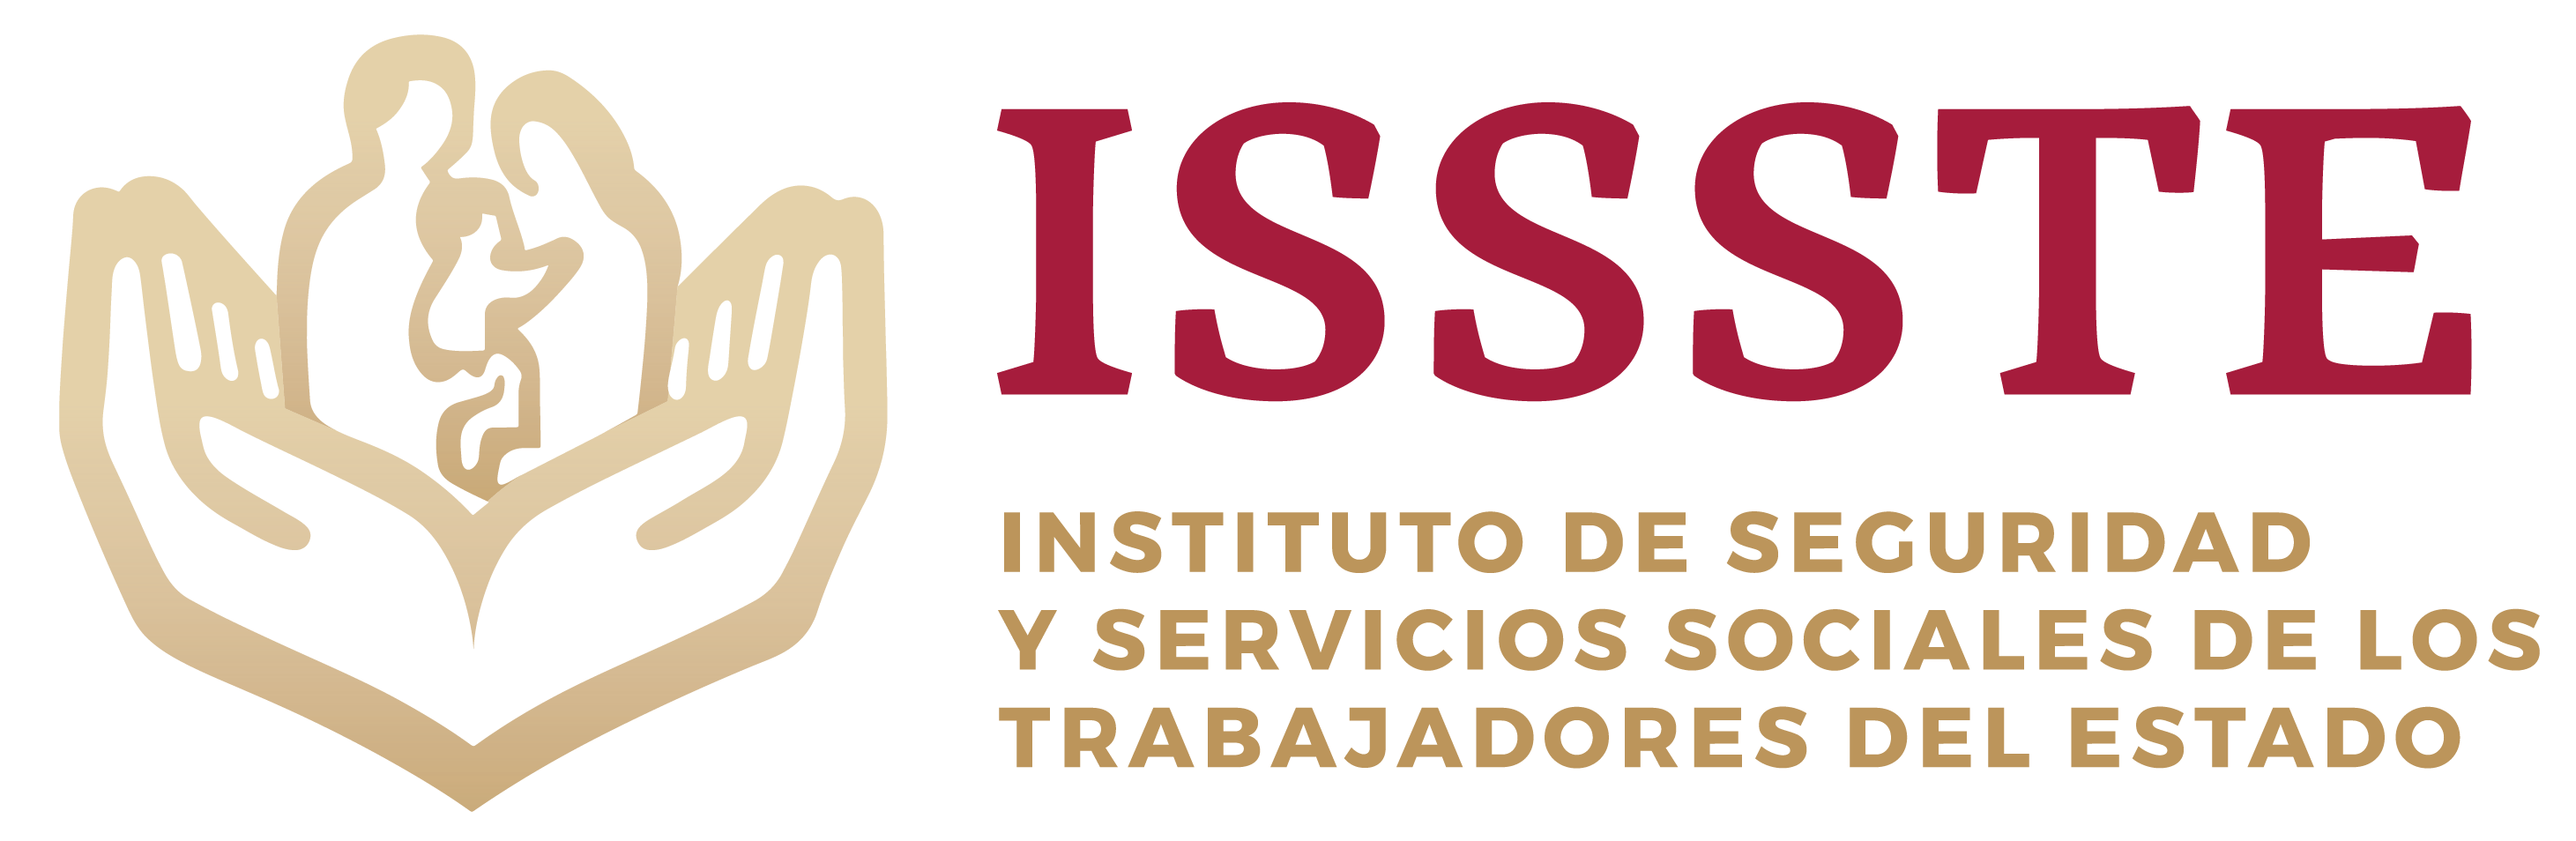 Instituto De Seguridad Y Servicios Sociales De Los Trabajadores Del Estado Noticias Dna3 3525